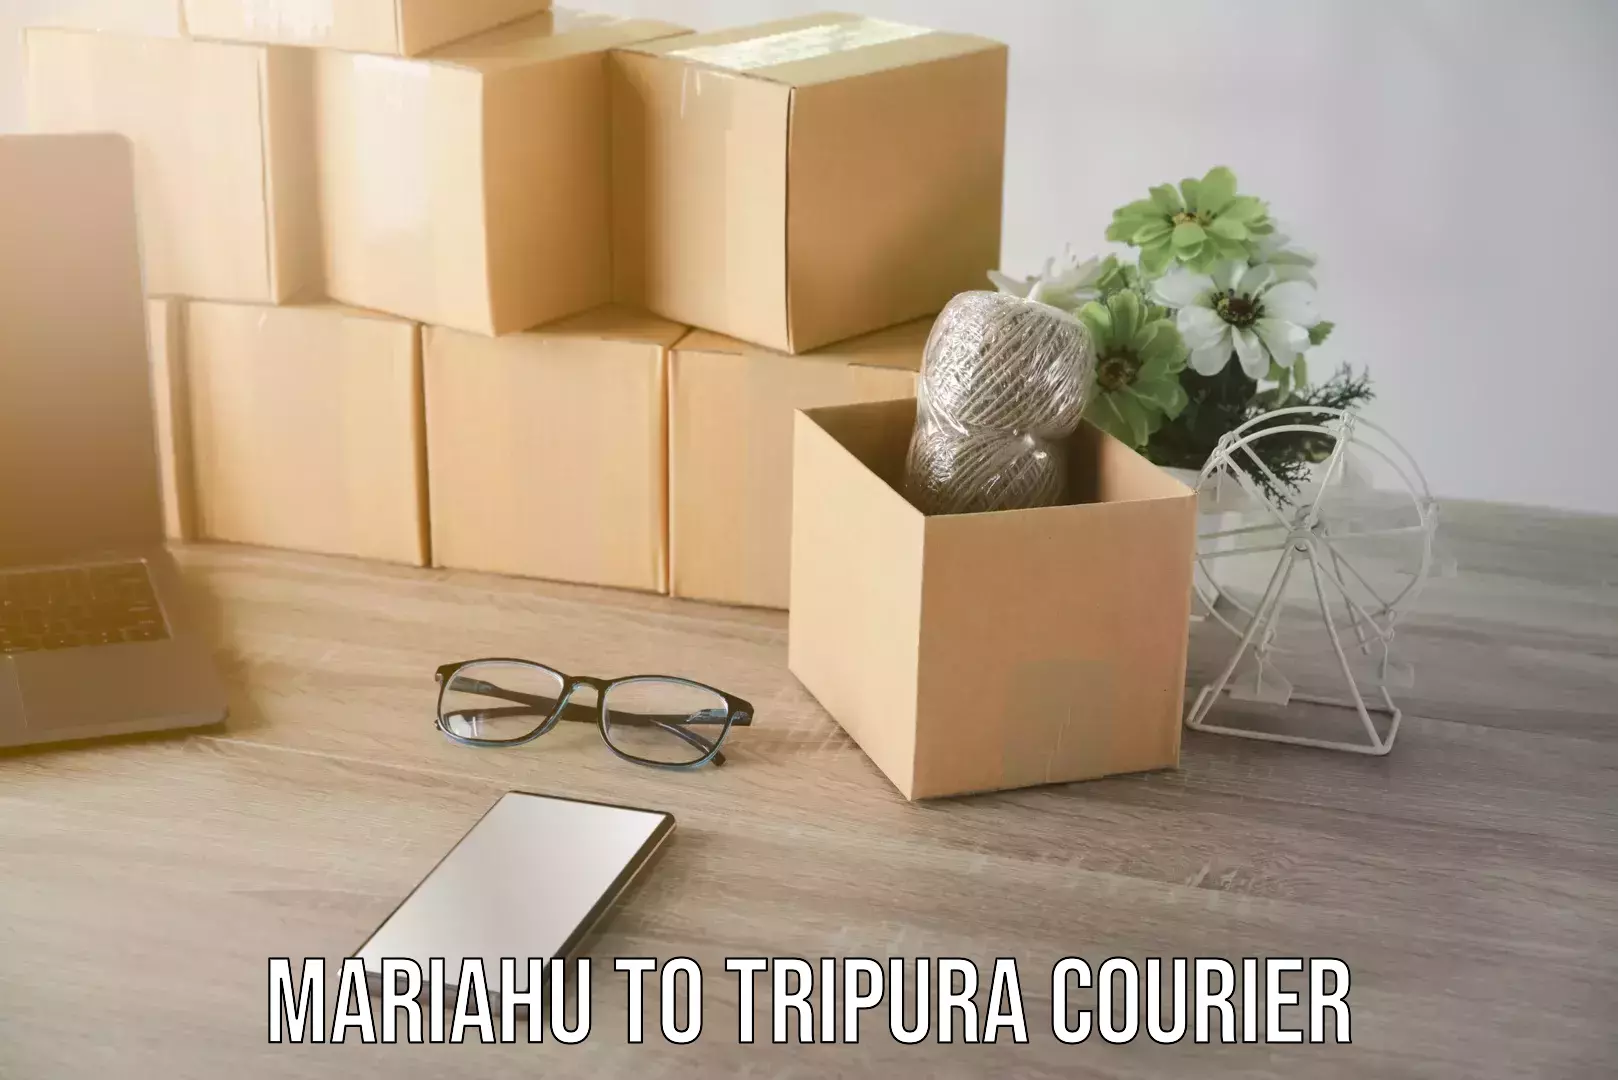 Reliable home shifting Mariahu to Tripura